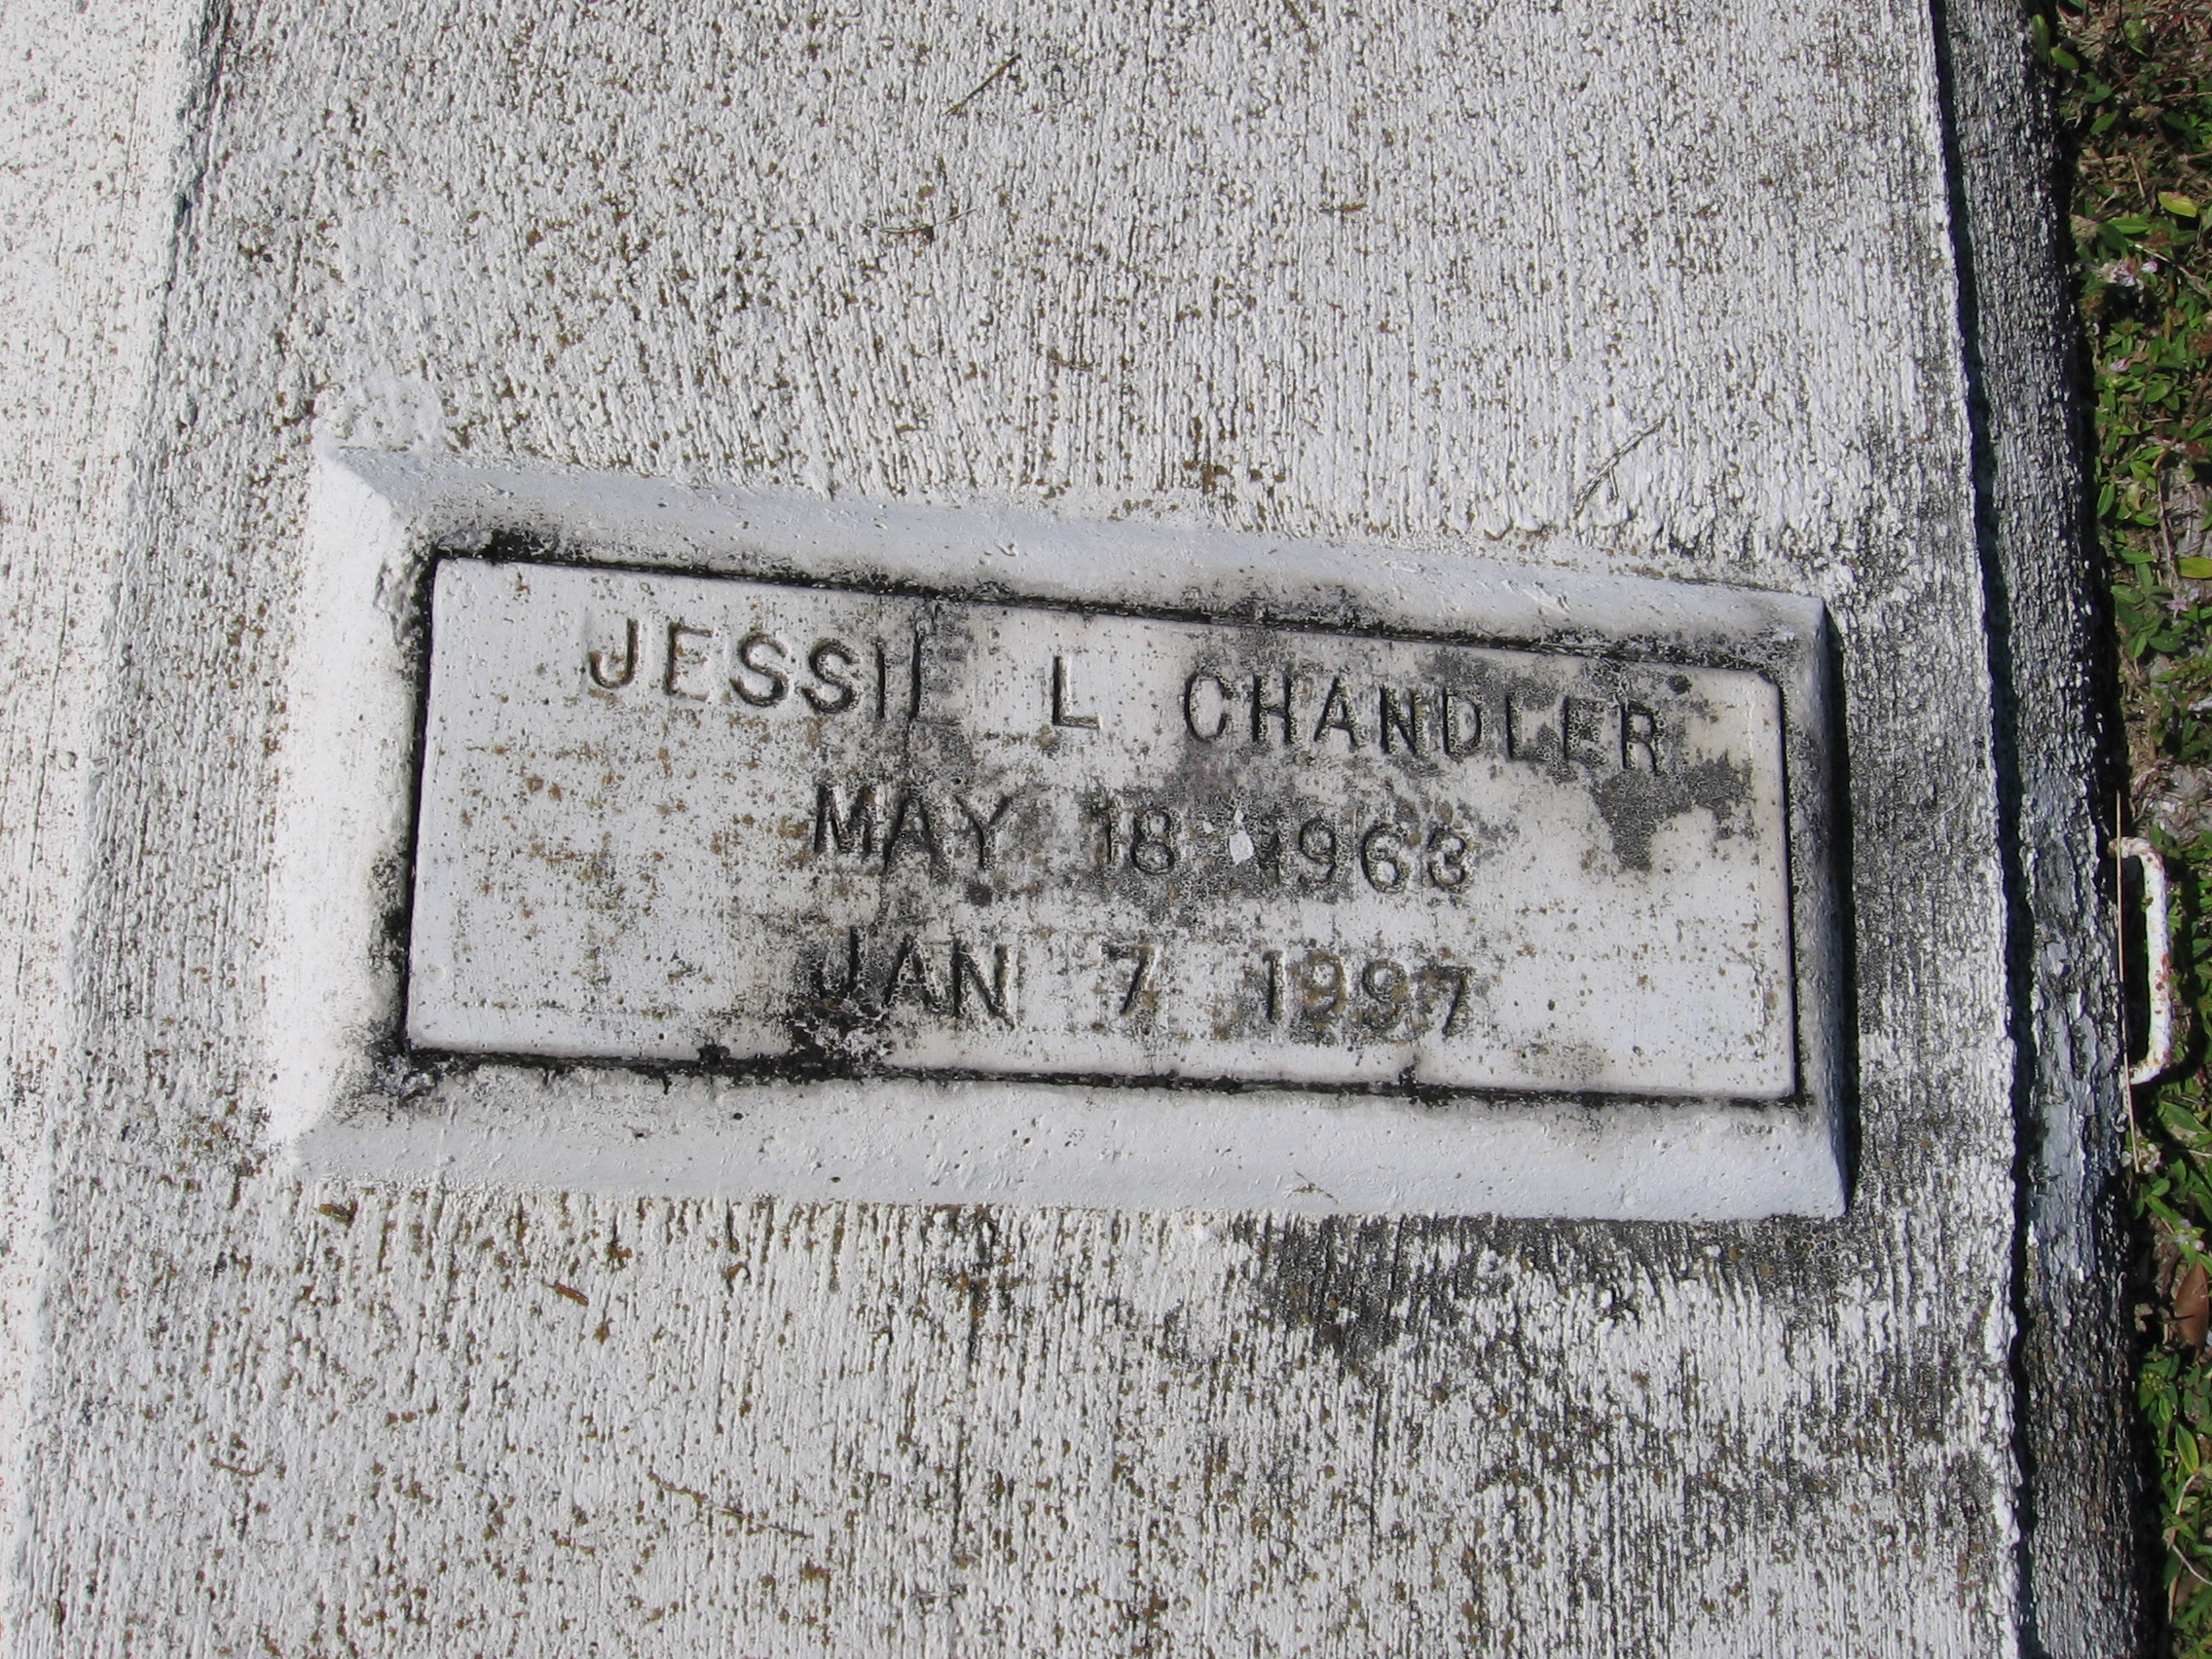 Jessie L Chandler